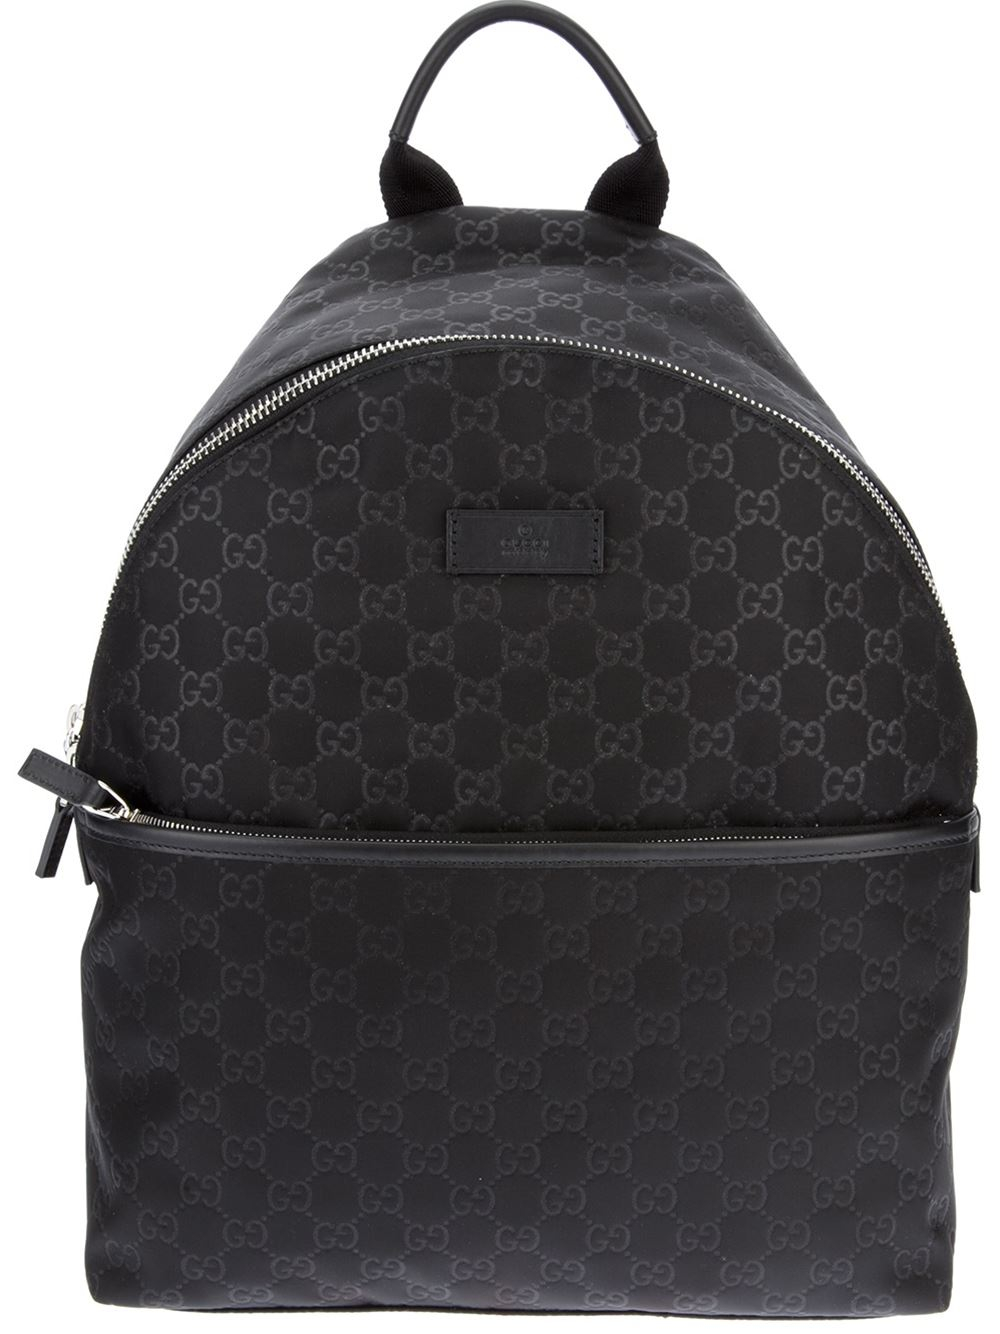 Gucci Embossed Monogram Backpack in Black - Lyst